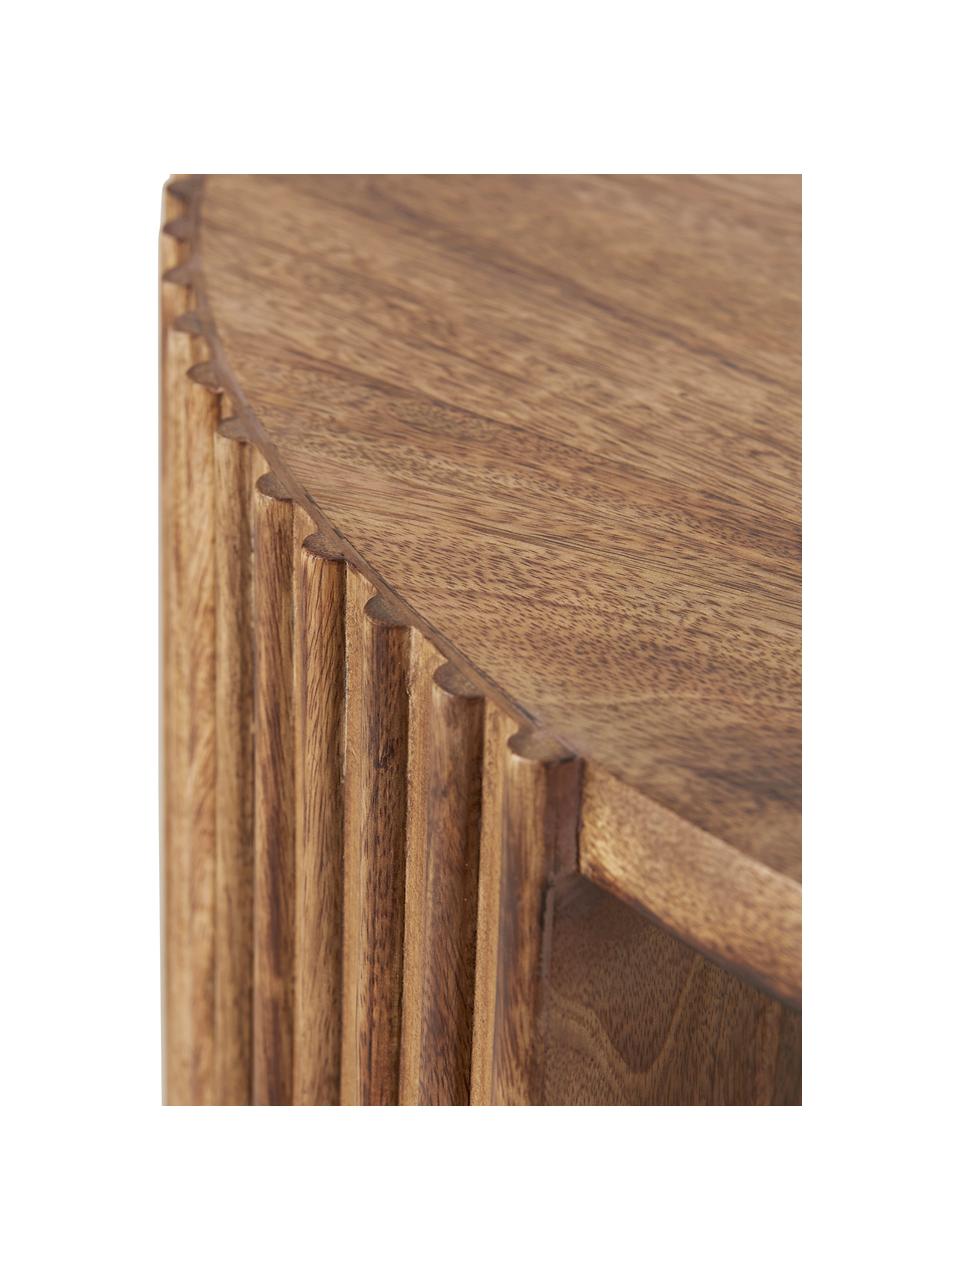 Konferenční stolek z mangového dřeva Bisselina, Mangové dřevo, Mangové dřevo, Ø 80 cm